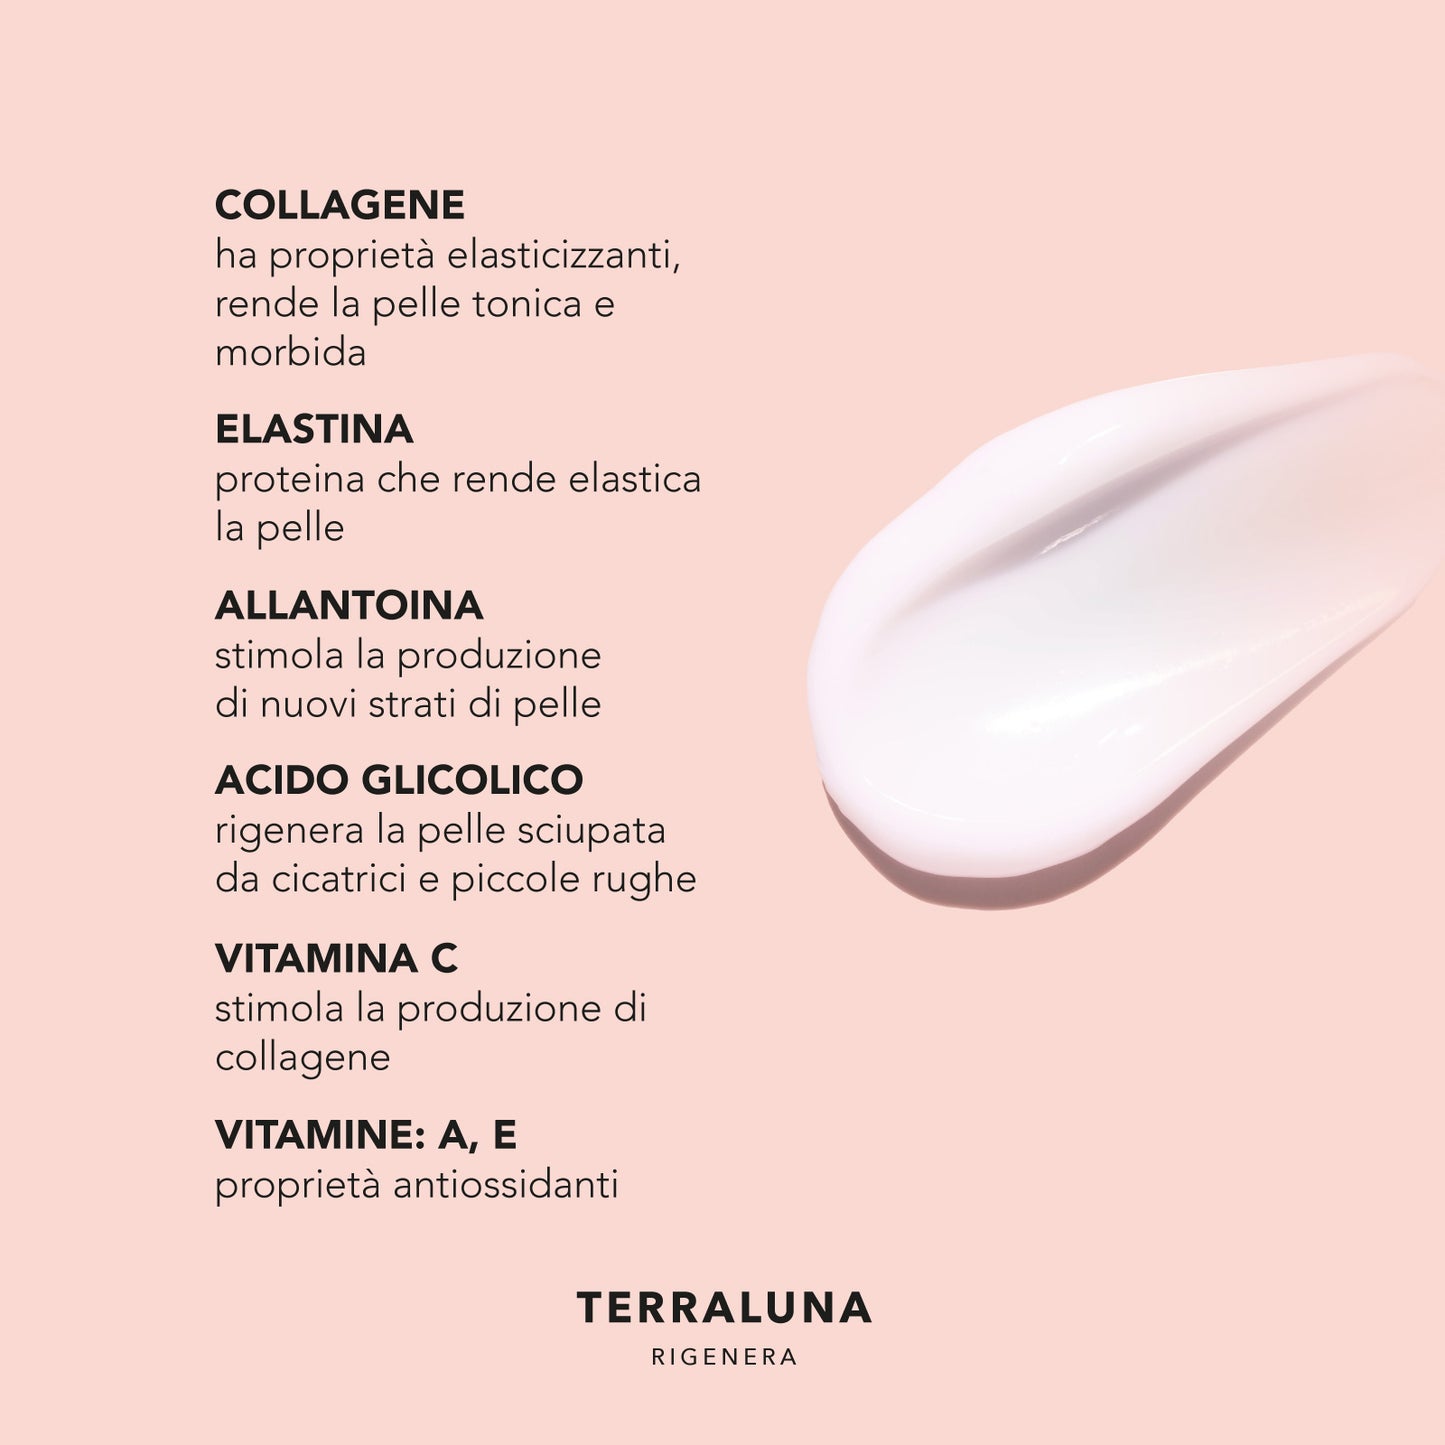 Crema TERRALUNA con ingredienti attivi come collagene, elastina e vitamine per la rigenerazione della pelle.